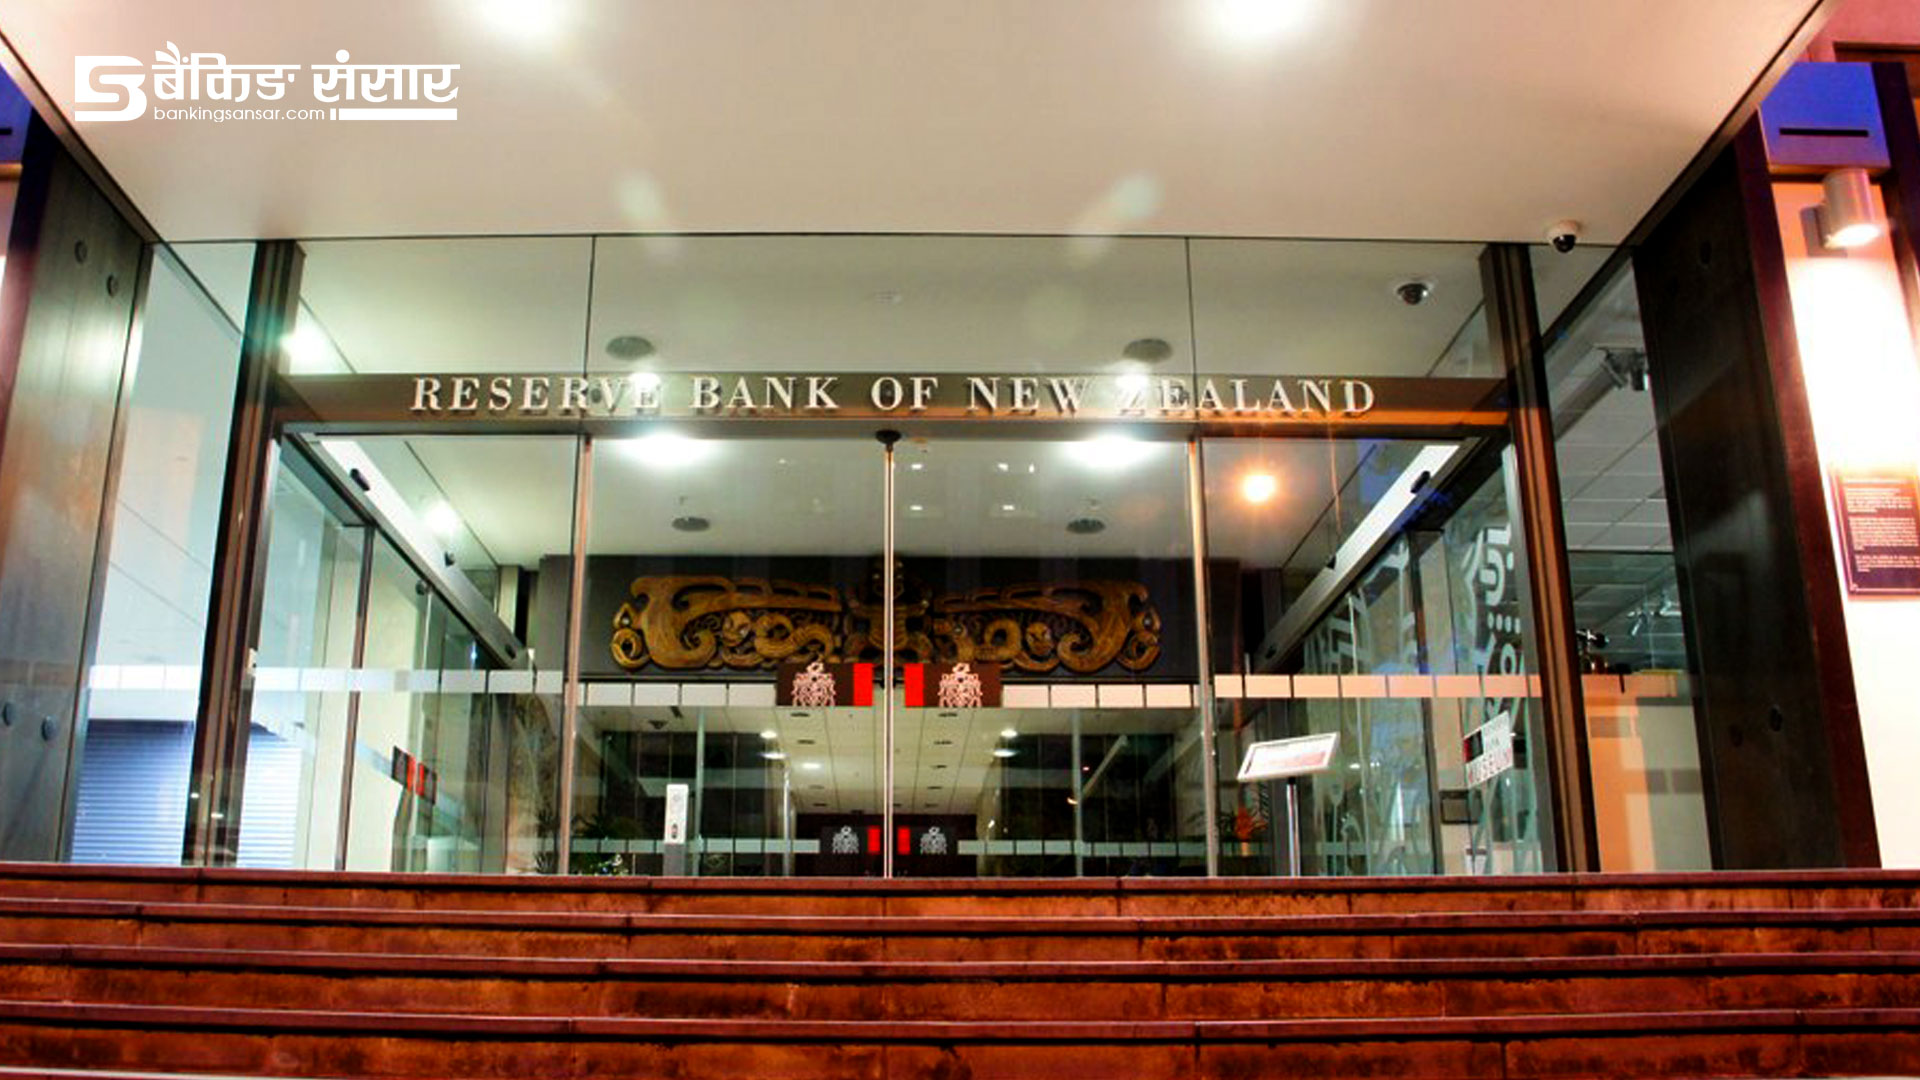 ‘बैंकहरूले जोखिम व्यवस्थापन सुधार गर्न आवश्यक छ’: रिजर्भ बैंक अफ न्युजिल्याण्ड